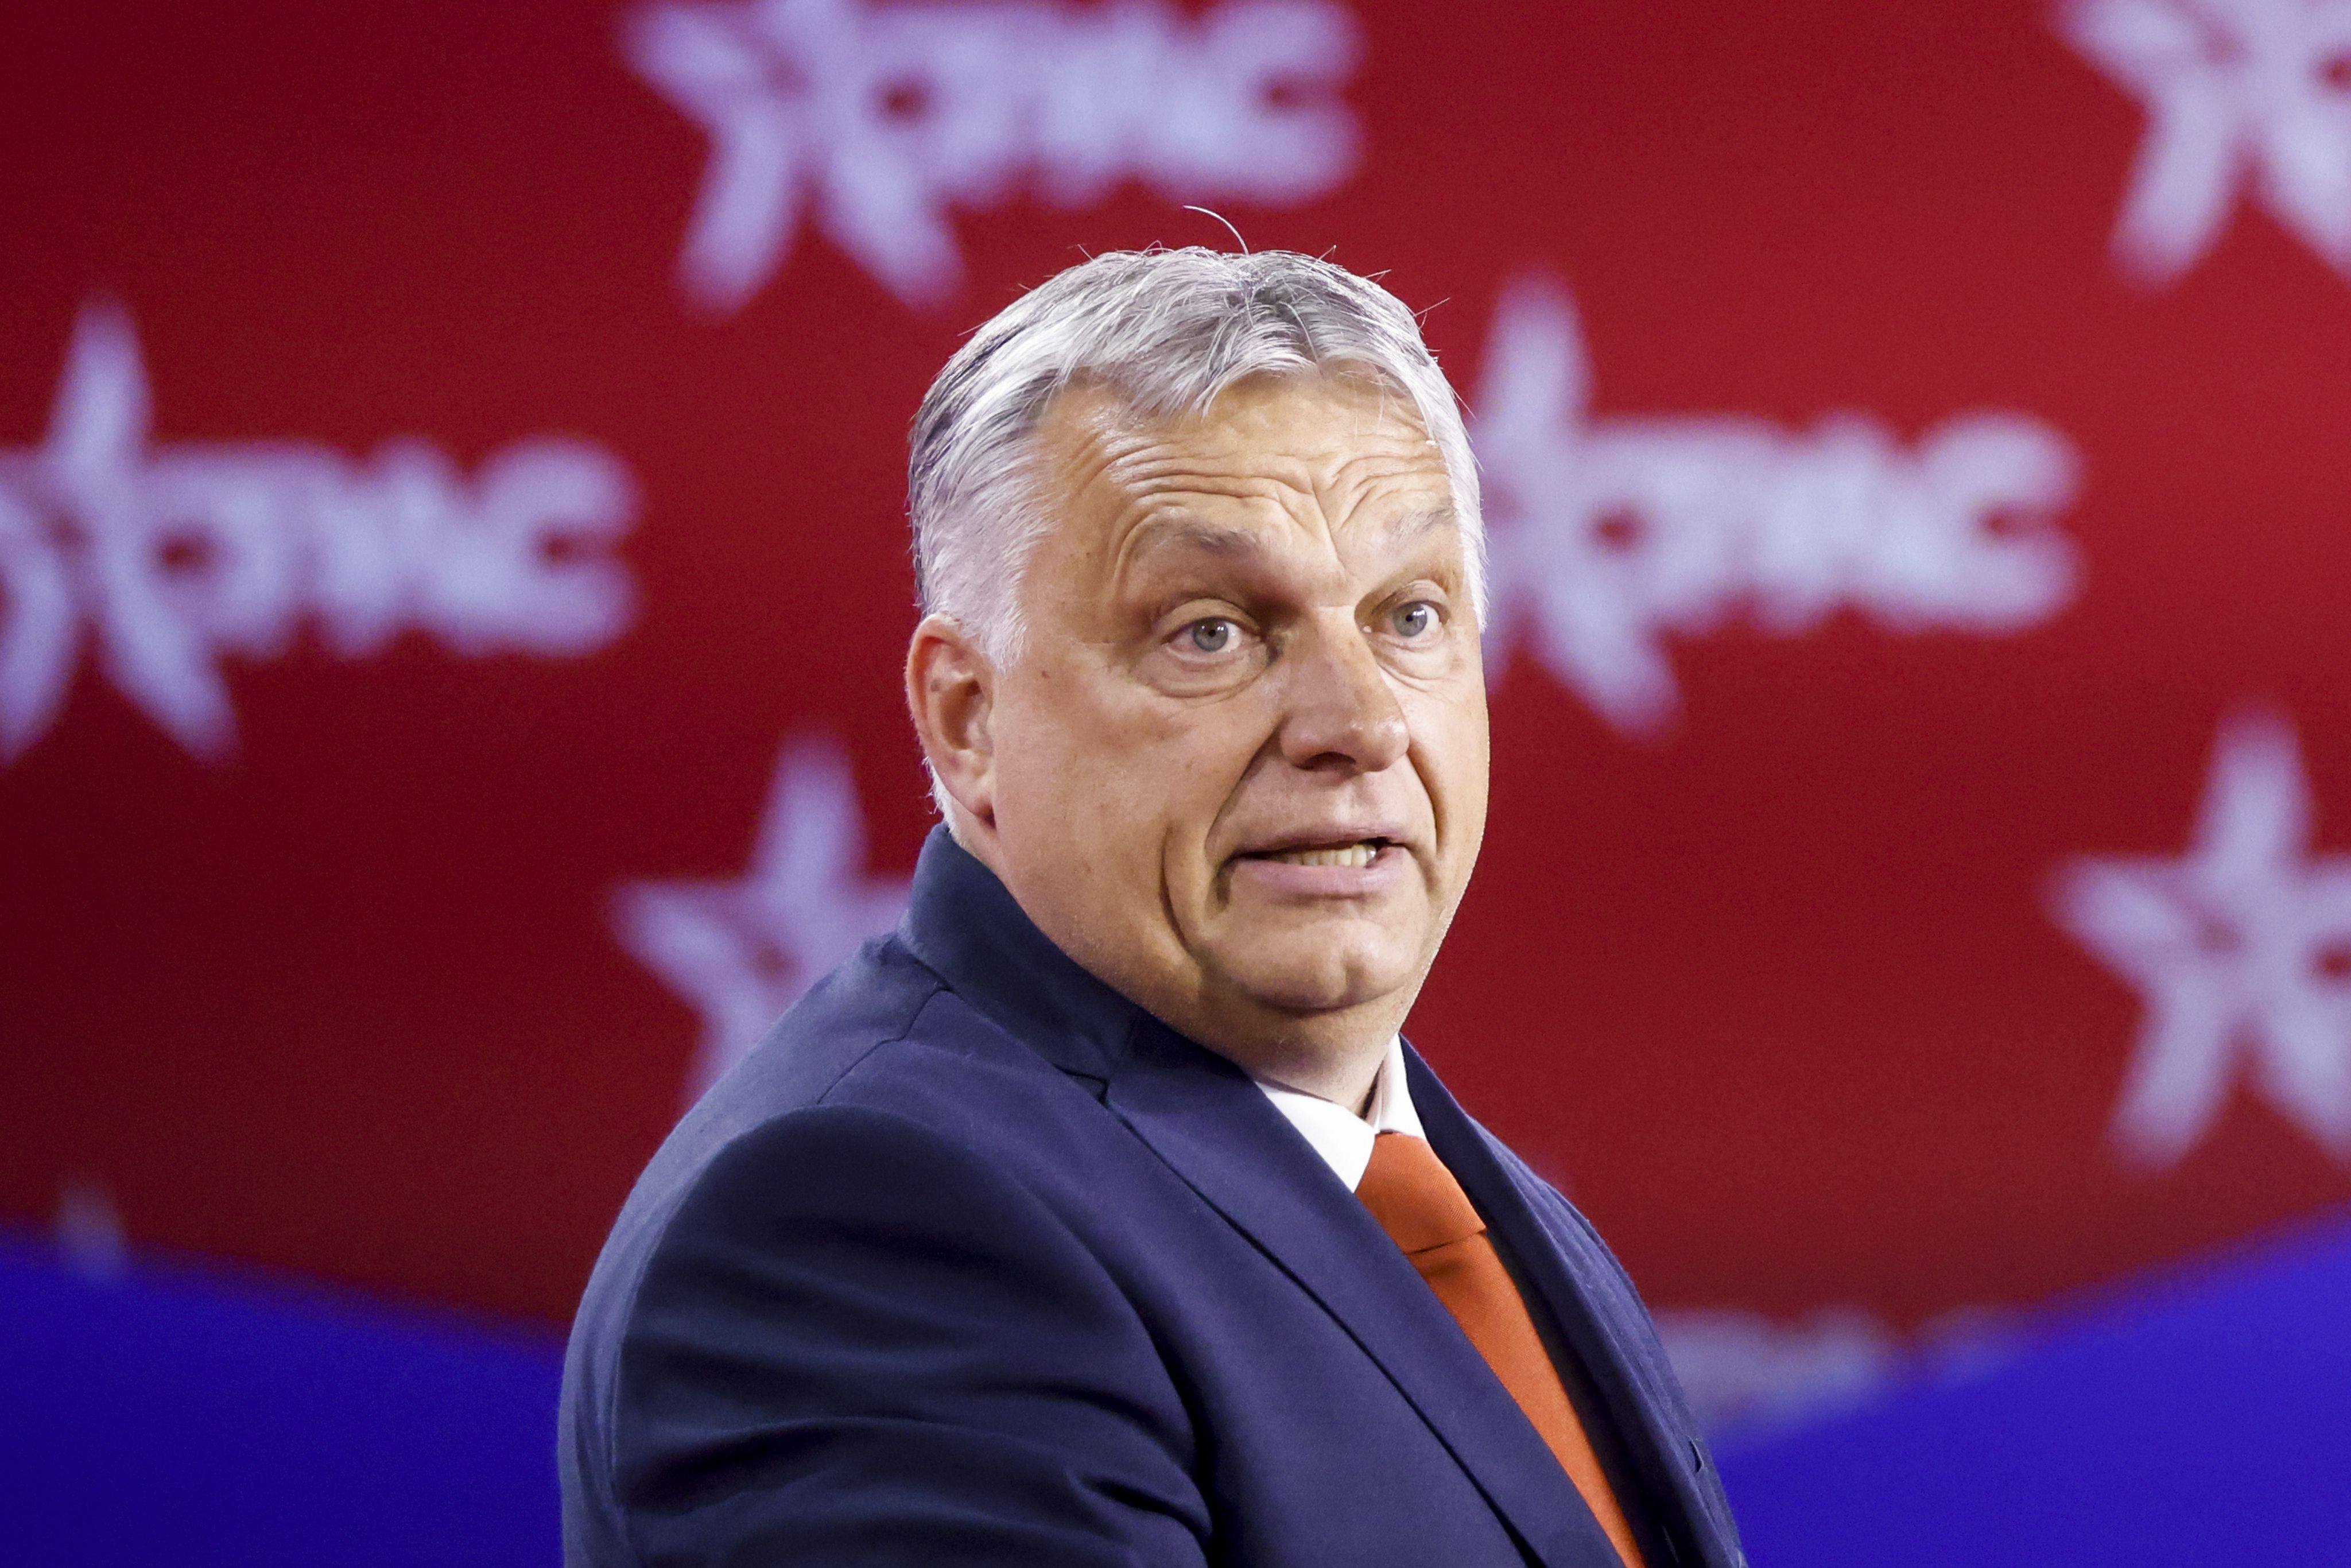 Hungary’s Prime Minister Viktor Orban. File photo: TNS